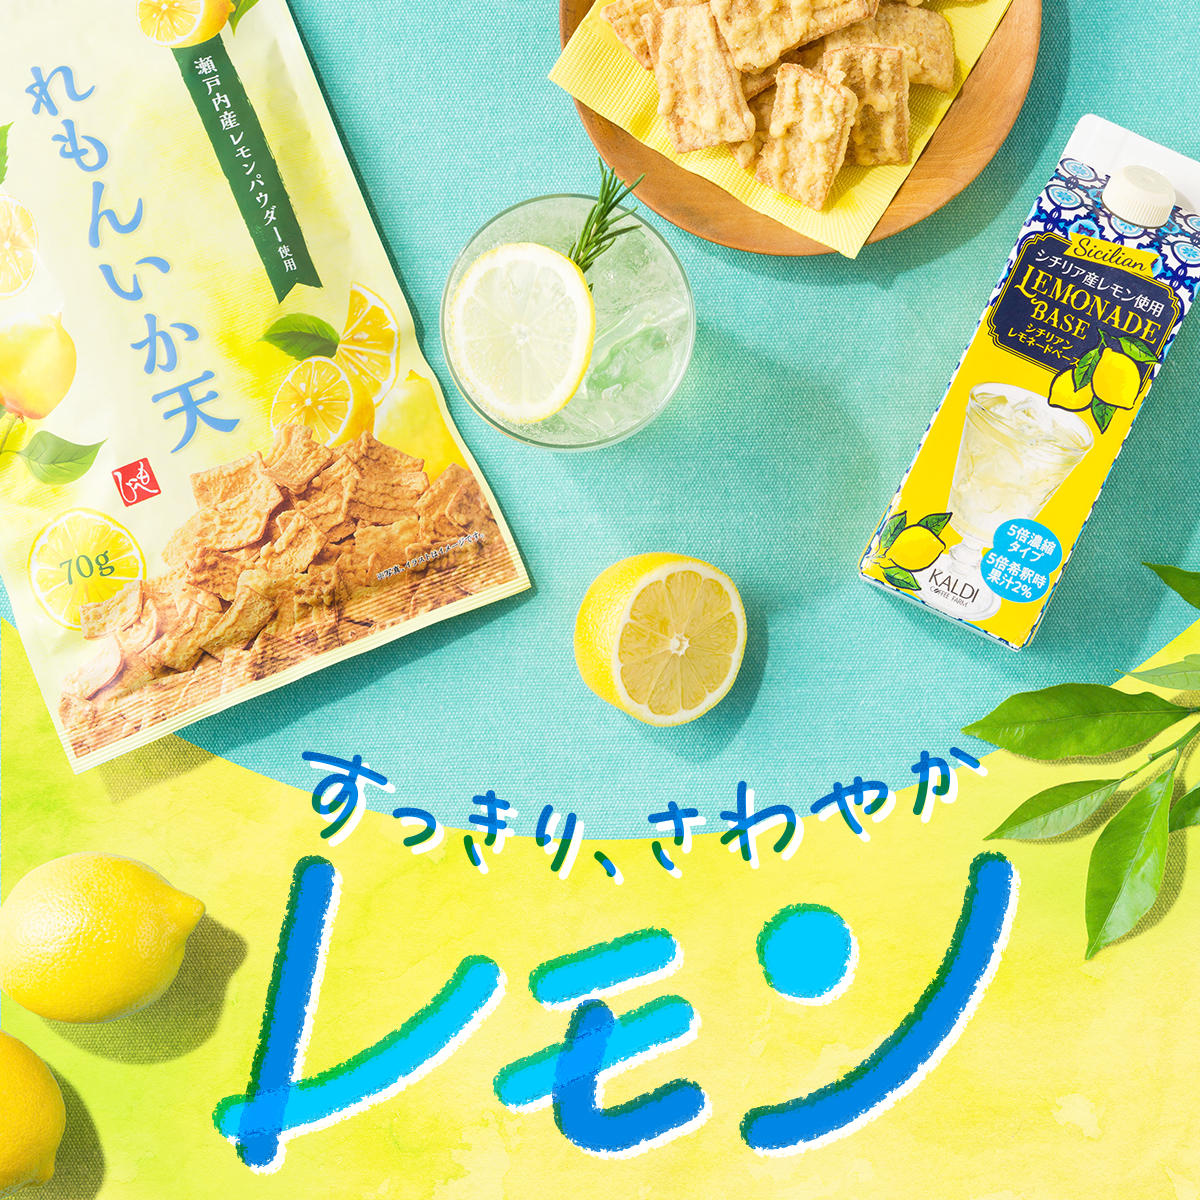 6 15更新 レモン好きにはたまらない すっきりさわやかレモン特集 ピックアップ カルディコーヒーファーム公式サイト